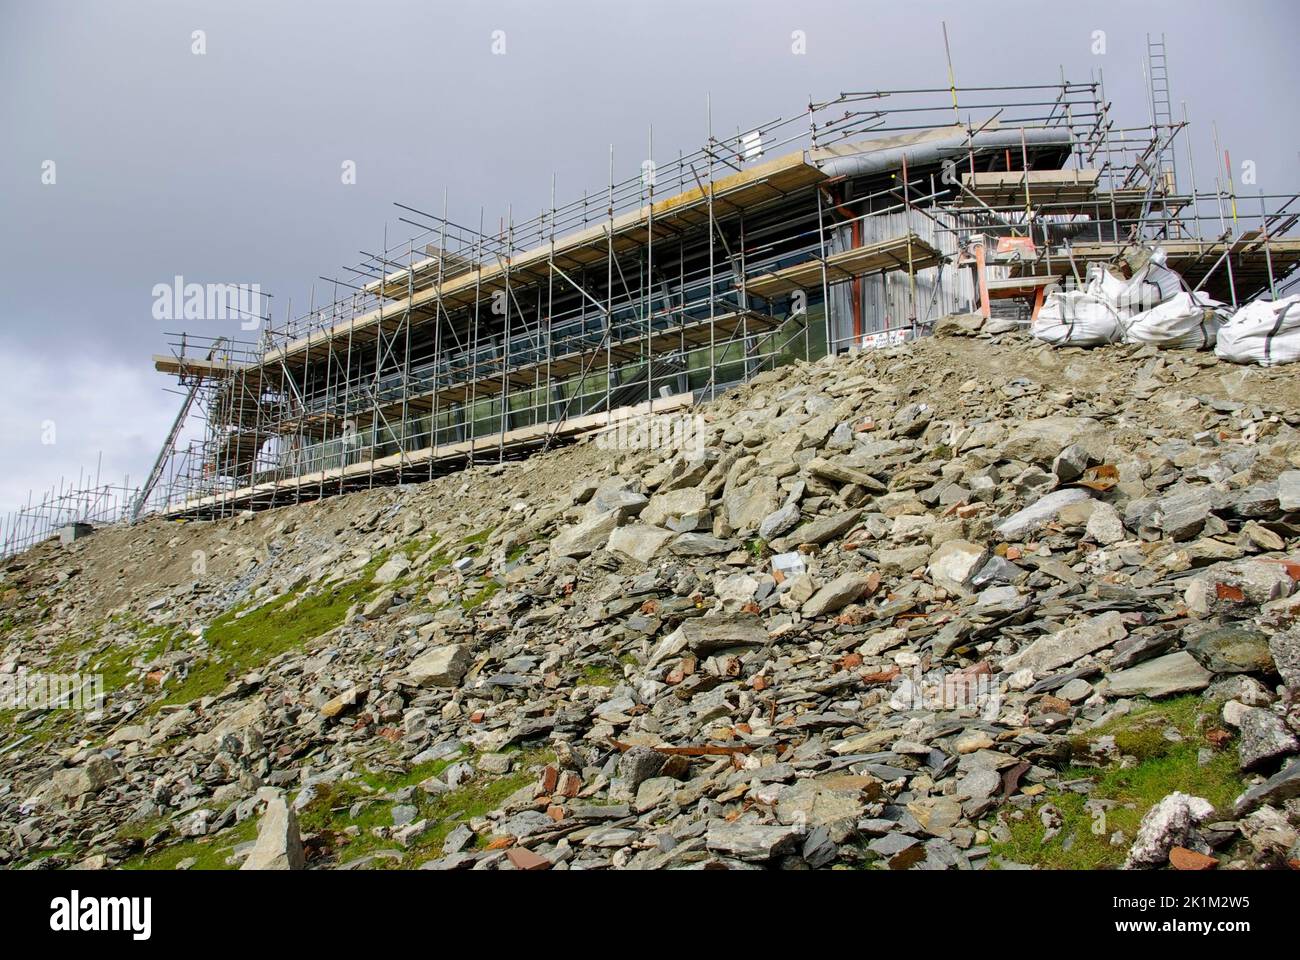 Yr Eryri, Summit Station under construction, Yr Wyddfa, Snowdon, North Wales. Stock Photo